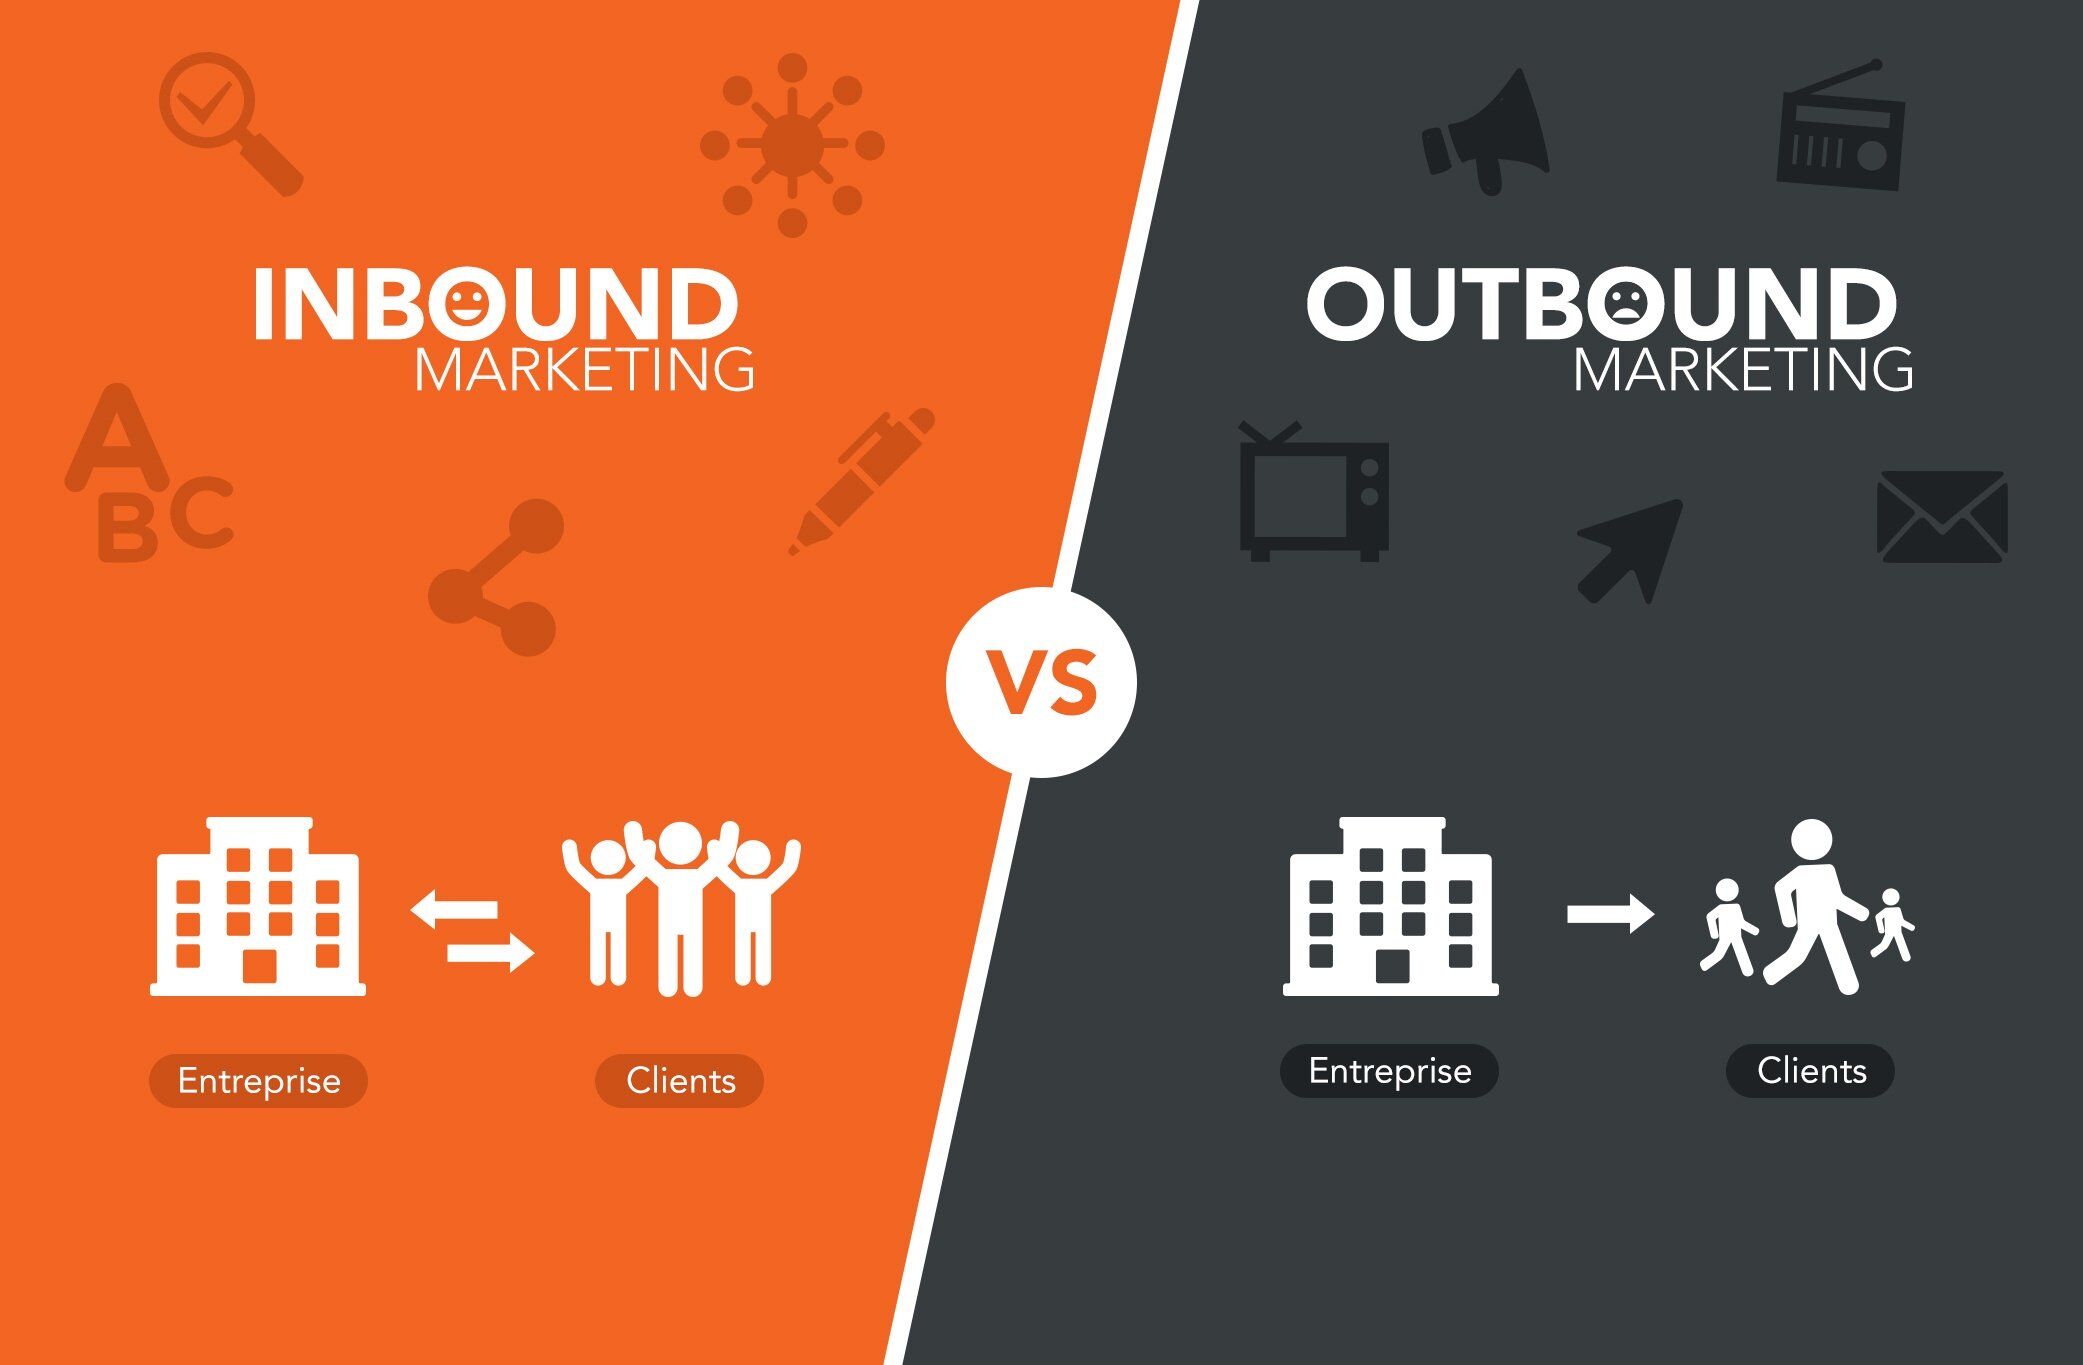 inbound-vs-outbound-marketing-strategies.jpg